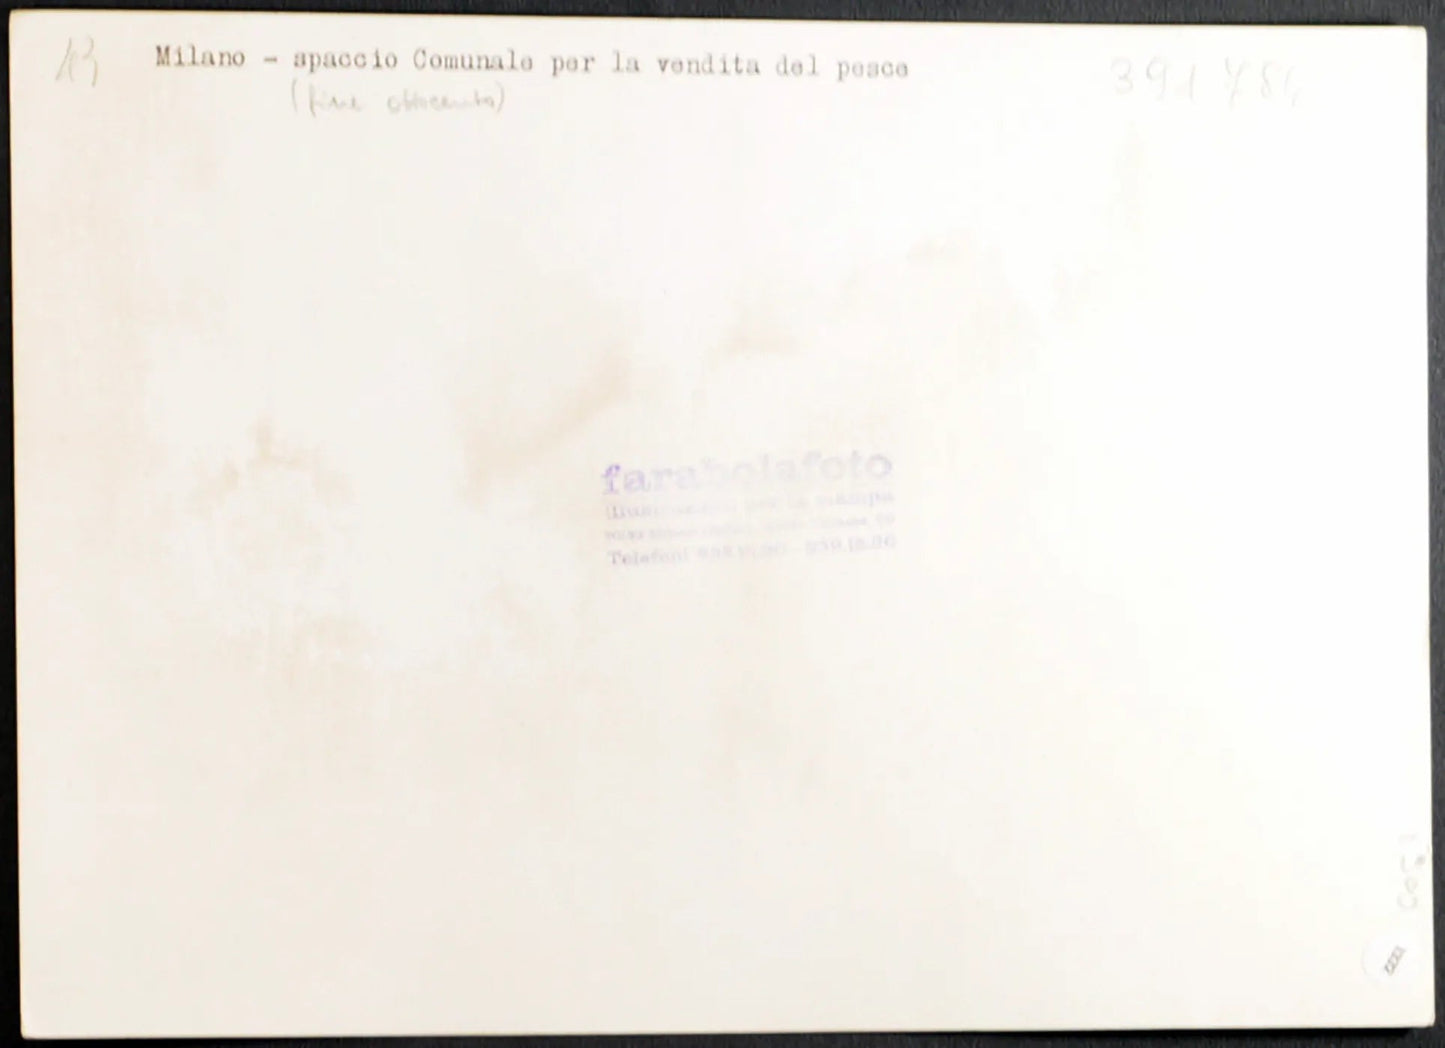 Spaccio Comunale Milano fine 800 Ft 1332 - Stampa 24x18 cm - Farabola Stampa ai sali d'argento